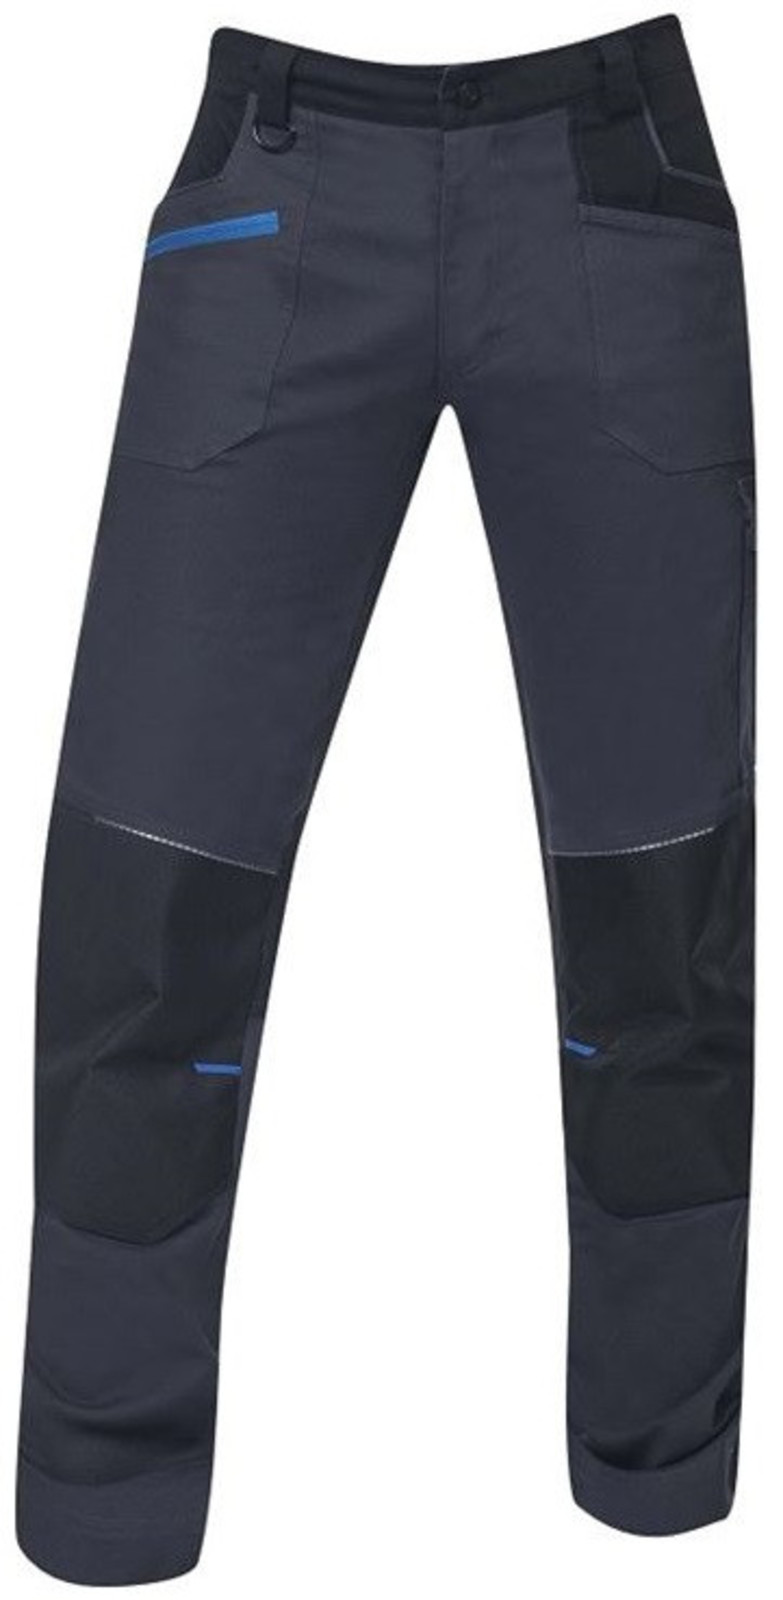 Pánske strečové montérkové nohavice Ardon 4Xstretch - veľkosť: 48, farba: tmavo šedá